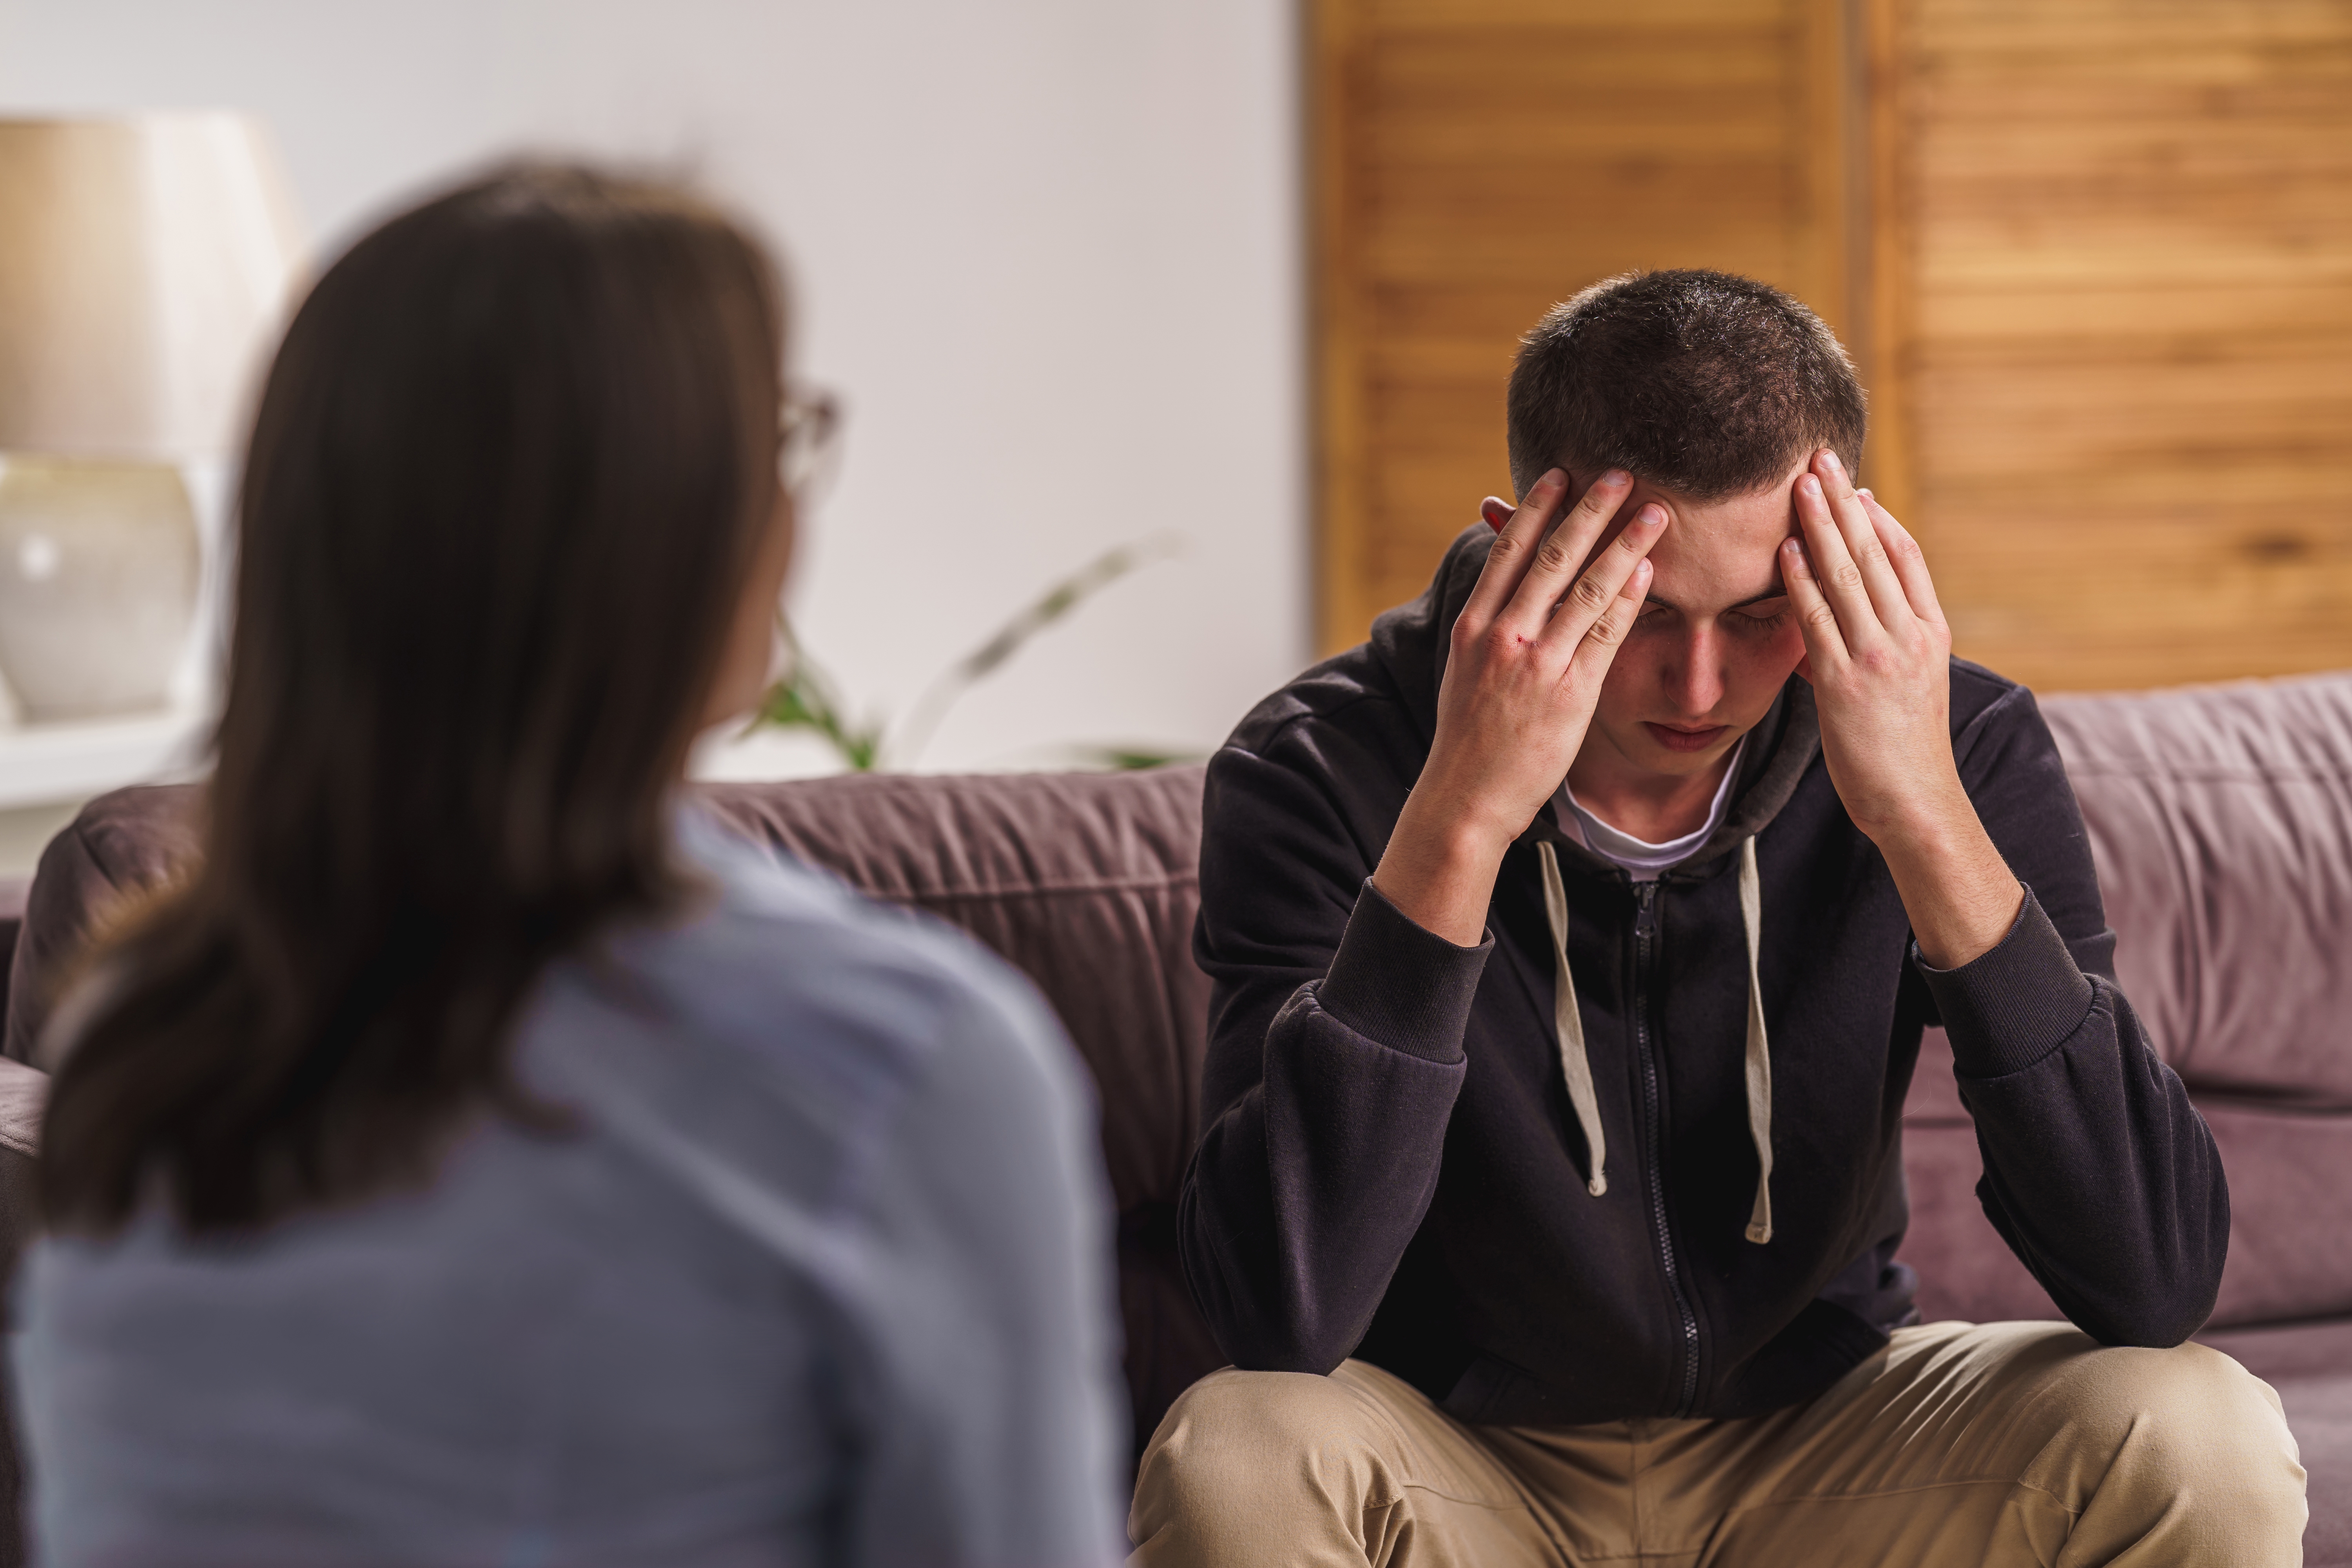 Un adolescent à l'air triste alors qu'il parle à une femme | Source : Shutterstock